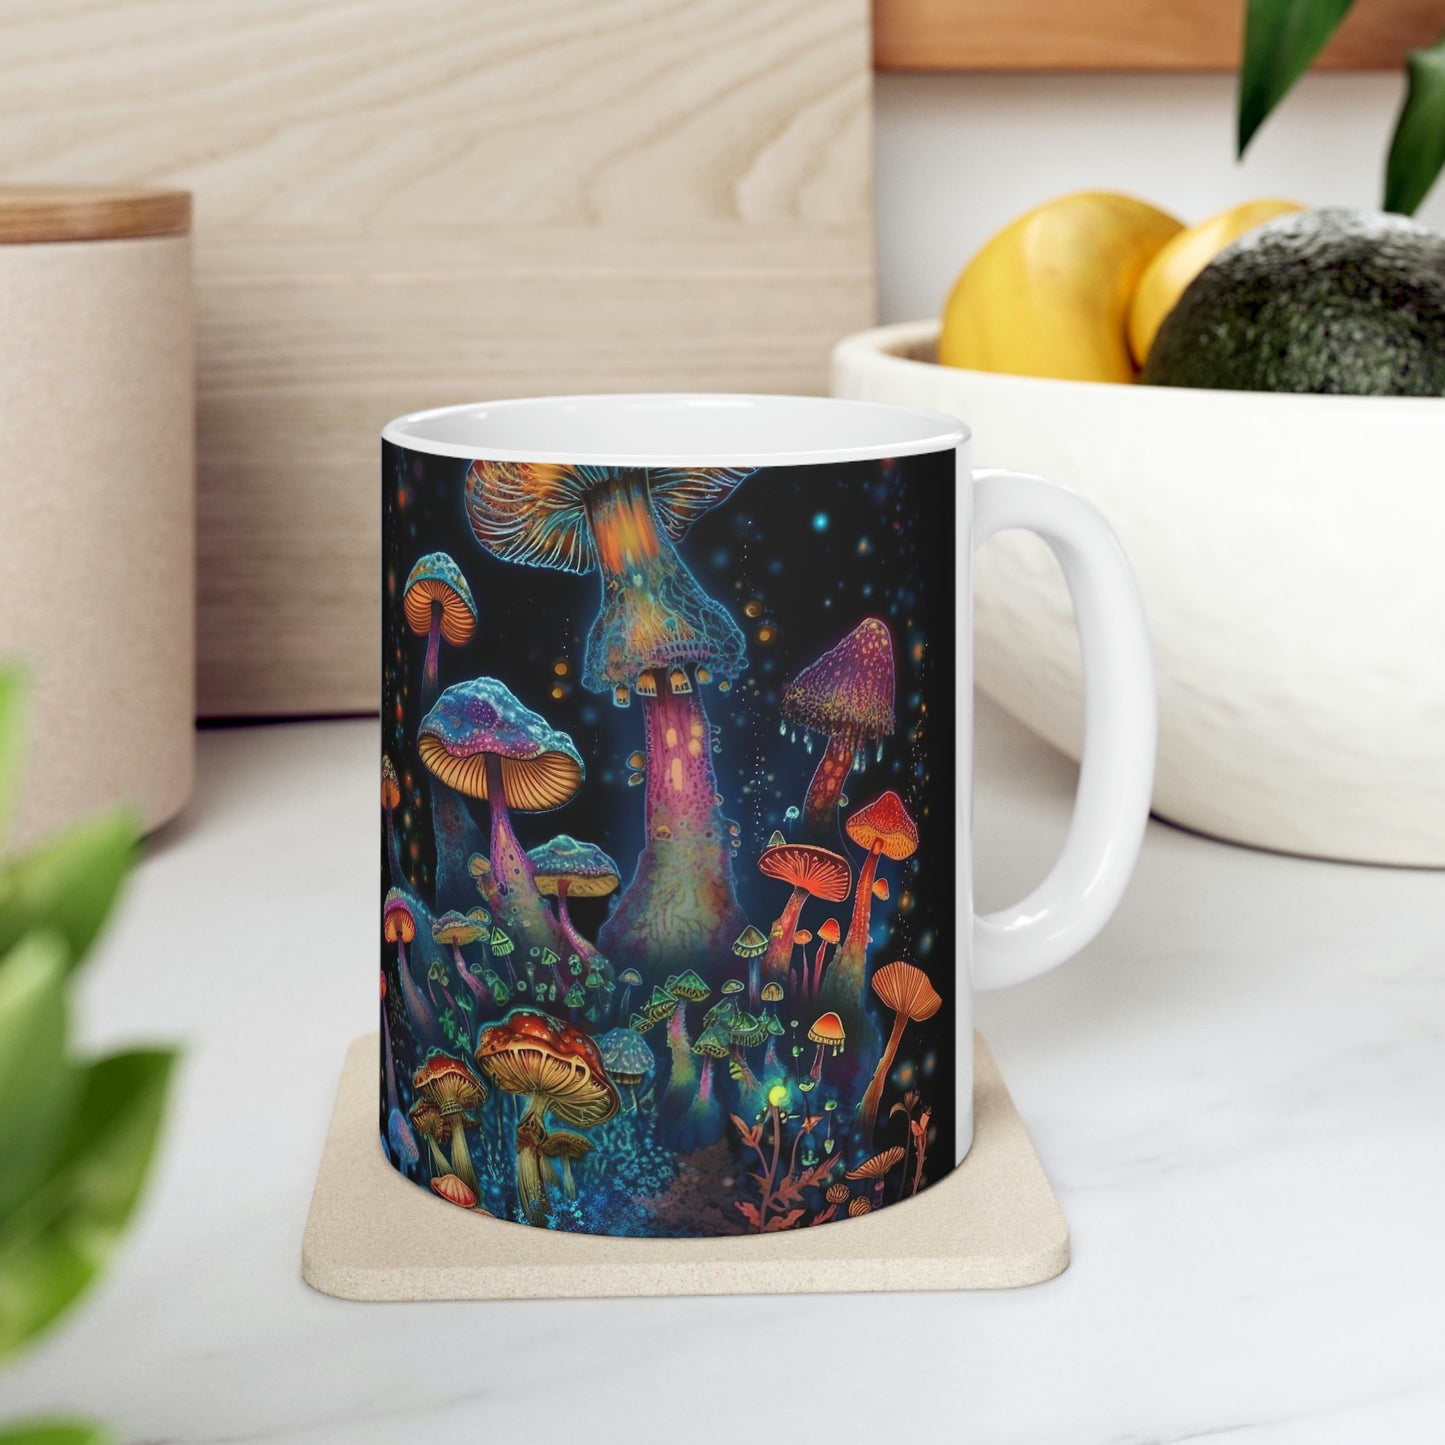 Nature's Gift- Ceramic Mug